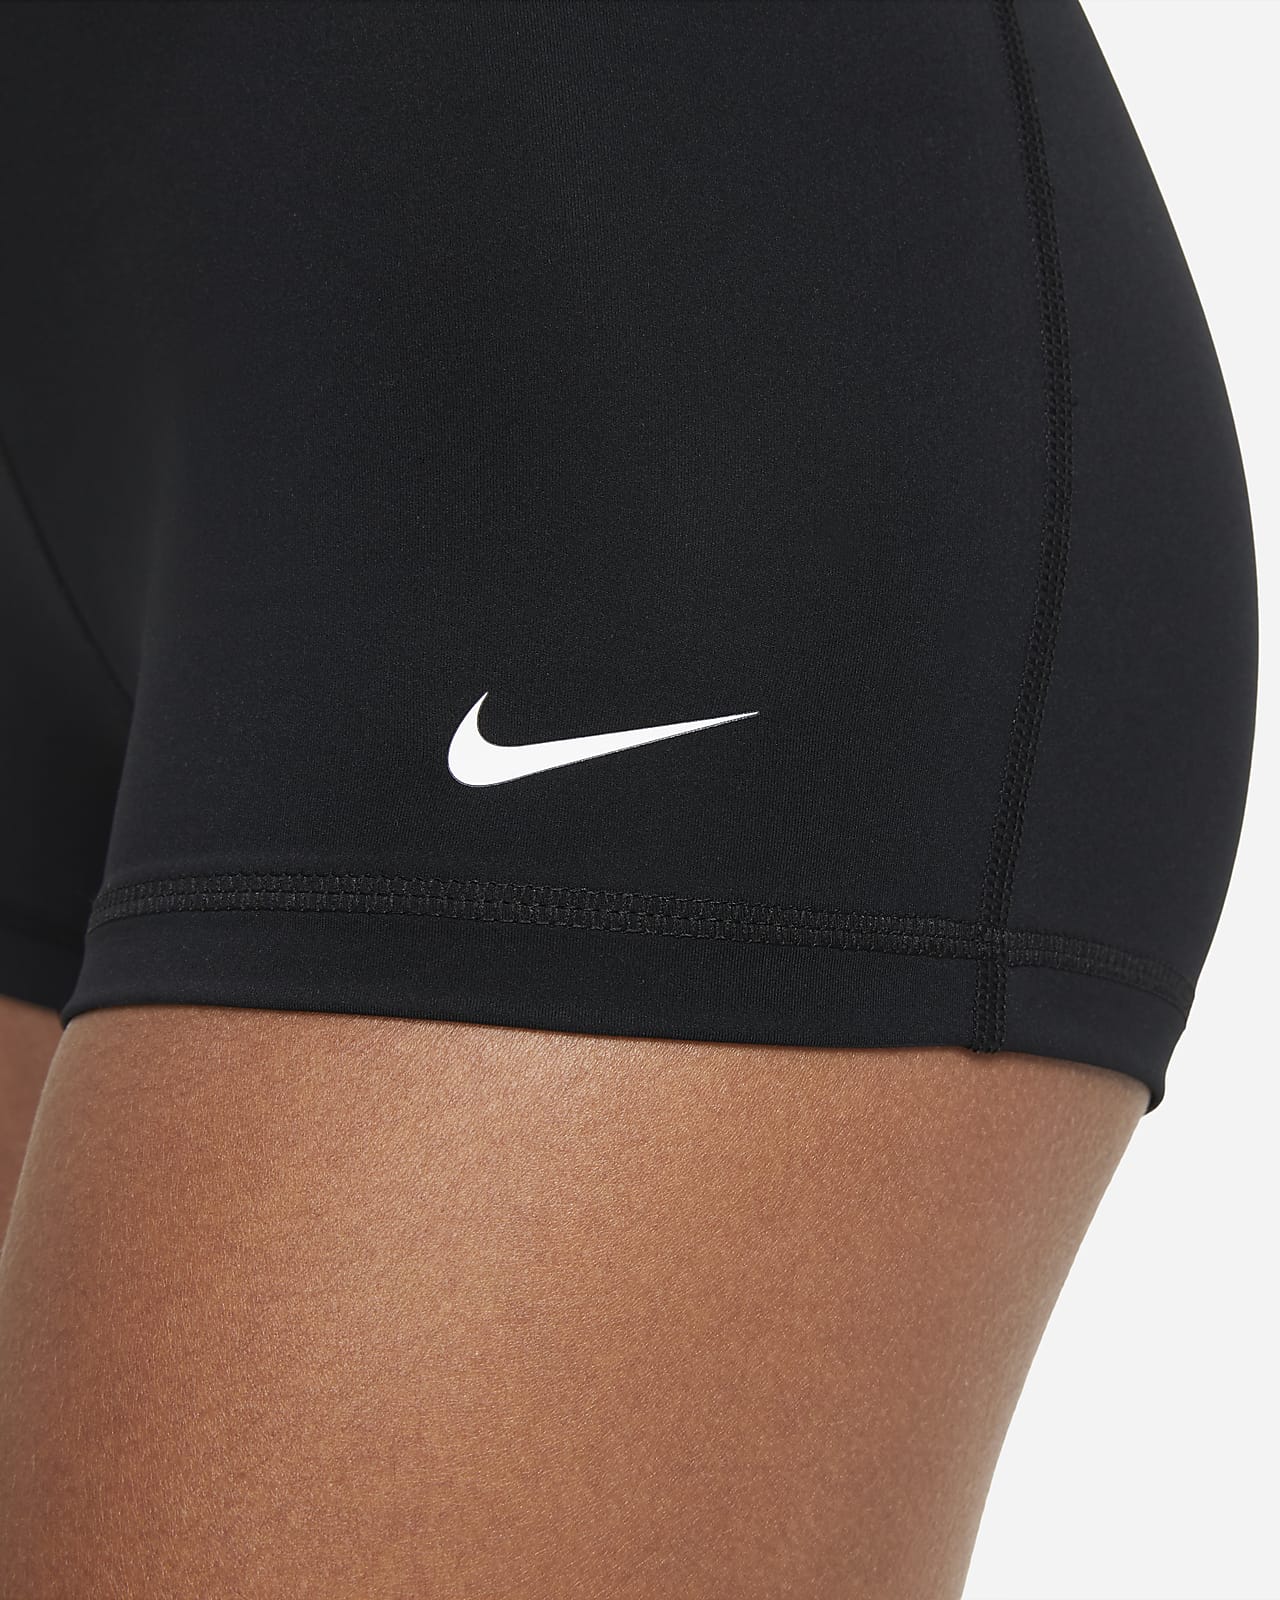 Mujer Nike Pro Shorts. Nike US